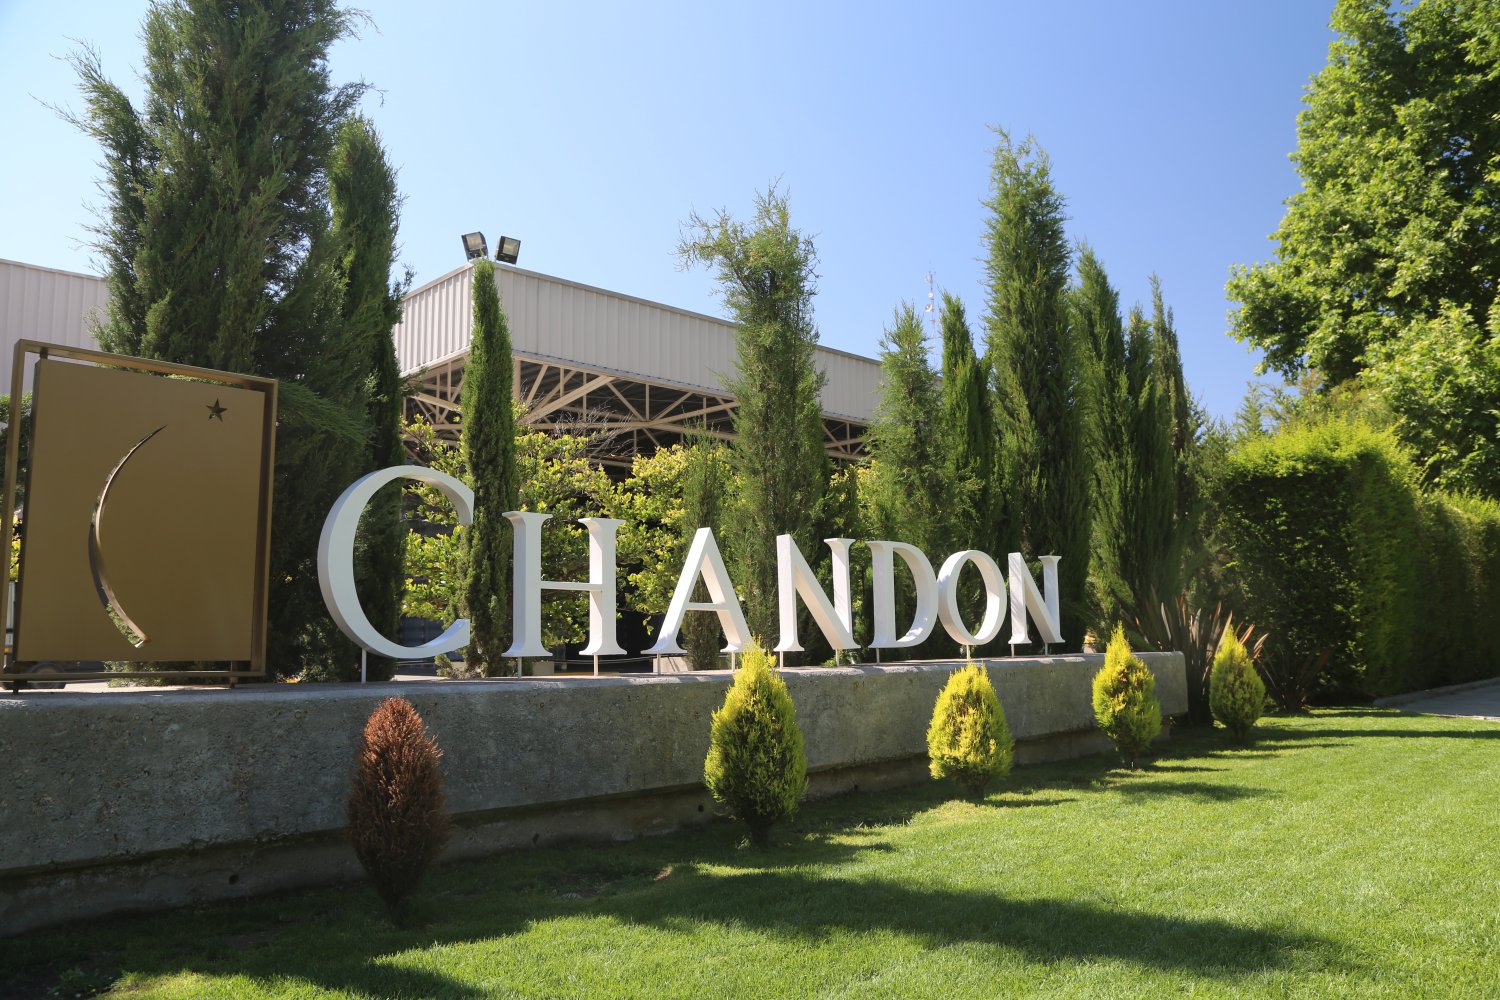 Visit Chandon Argentina in Argentina